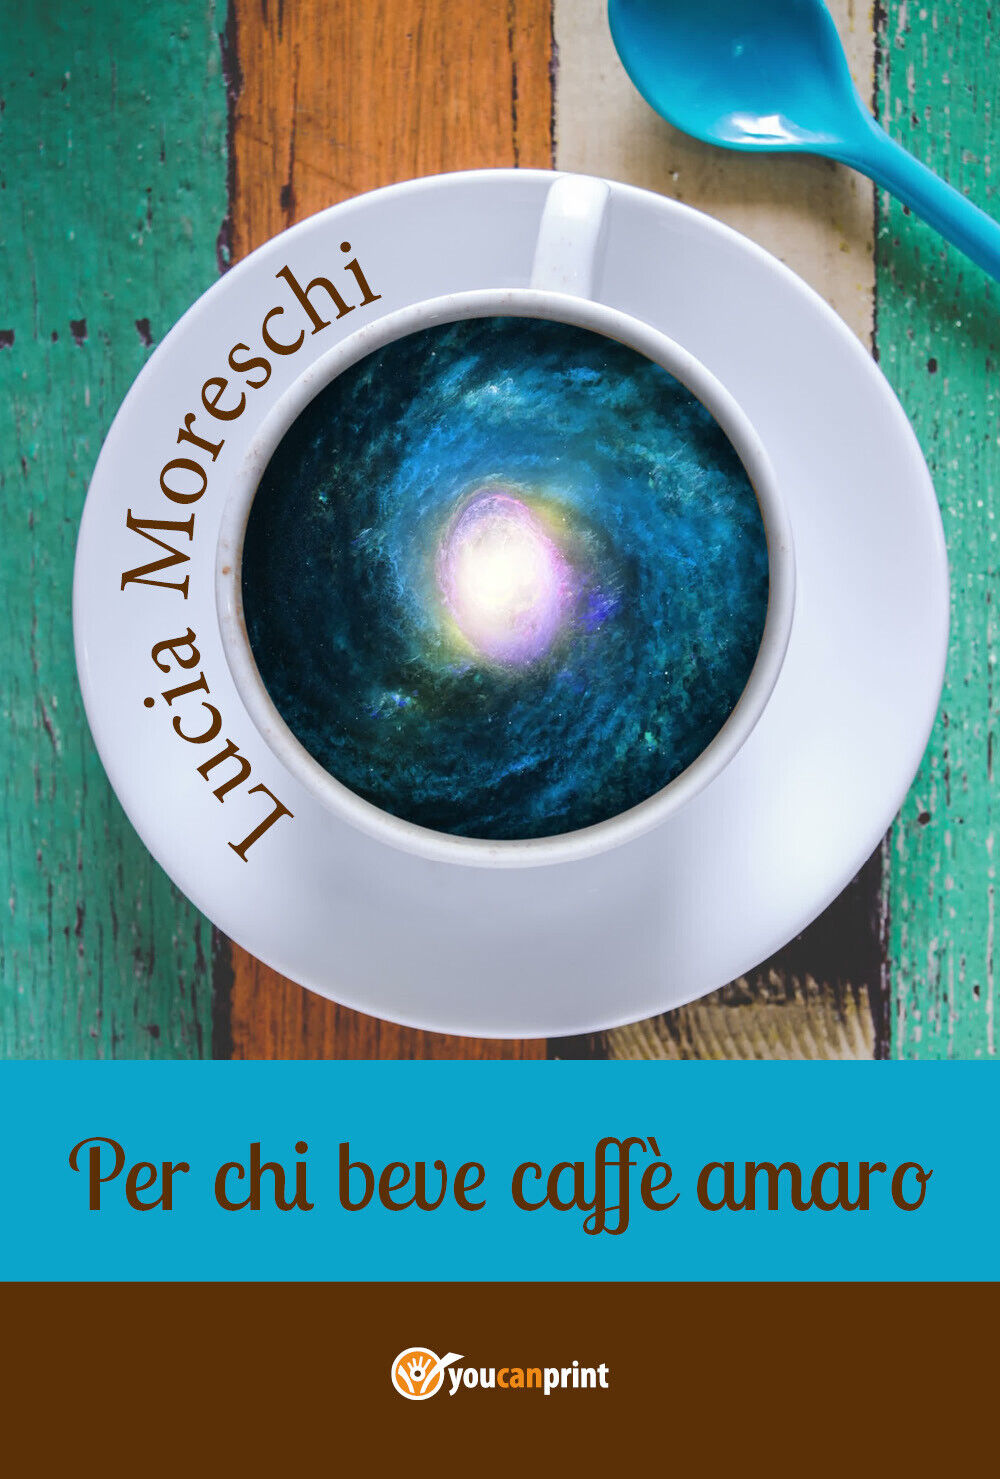 Per chi beve caff? amaro,  di Lucia Moreschi,  2018,  Youcanprint